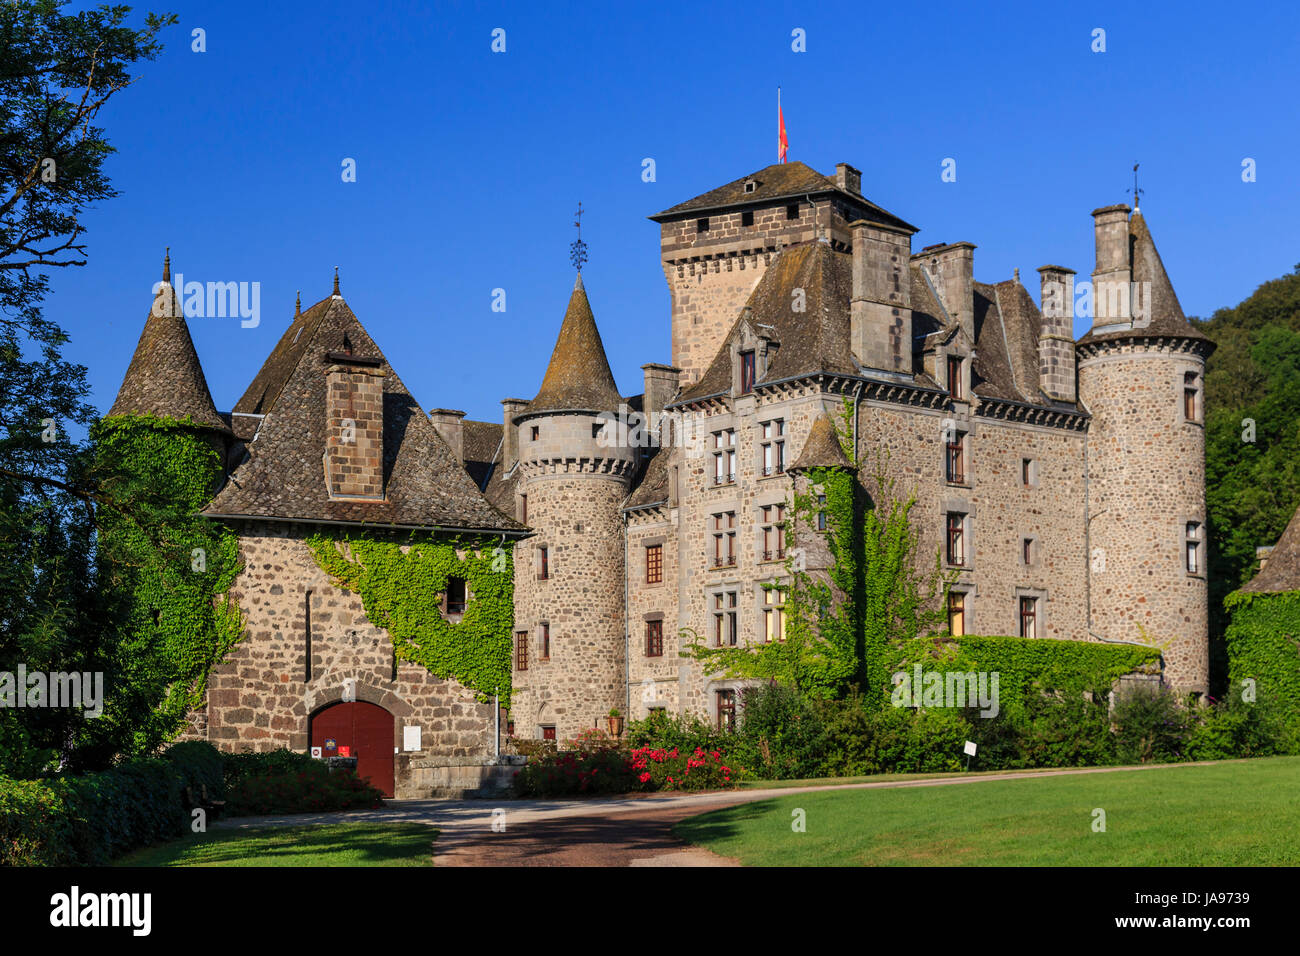 La France, Cantal, Aurillac, château de Pesteils, ancienne forteresse de Polminhac construit sur un promontoire rocheux dominant la ville Banque D'Images